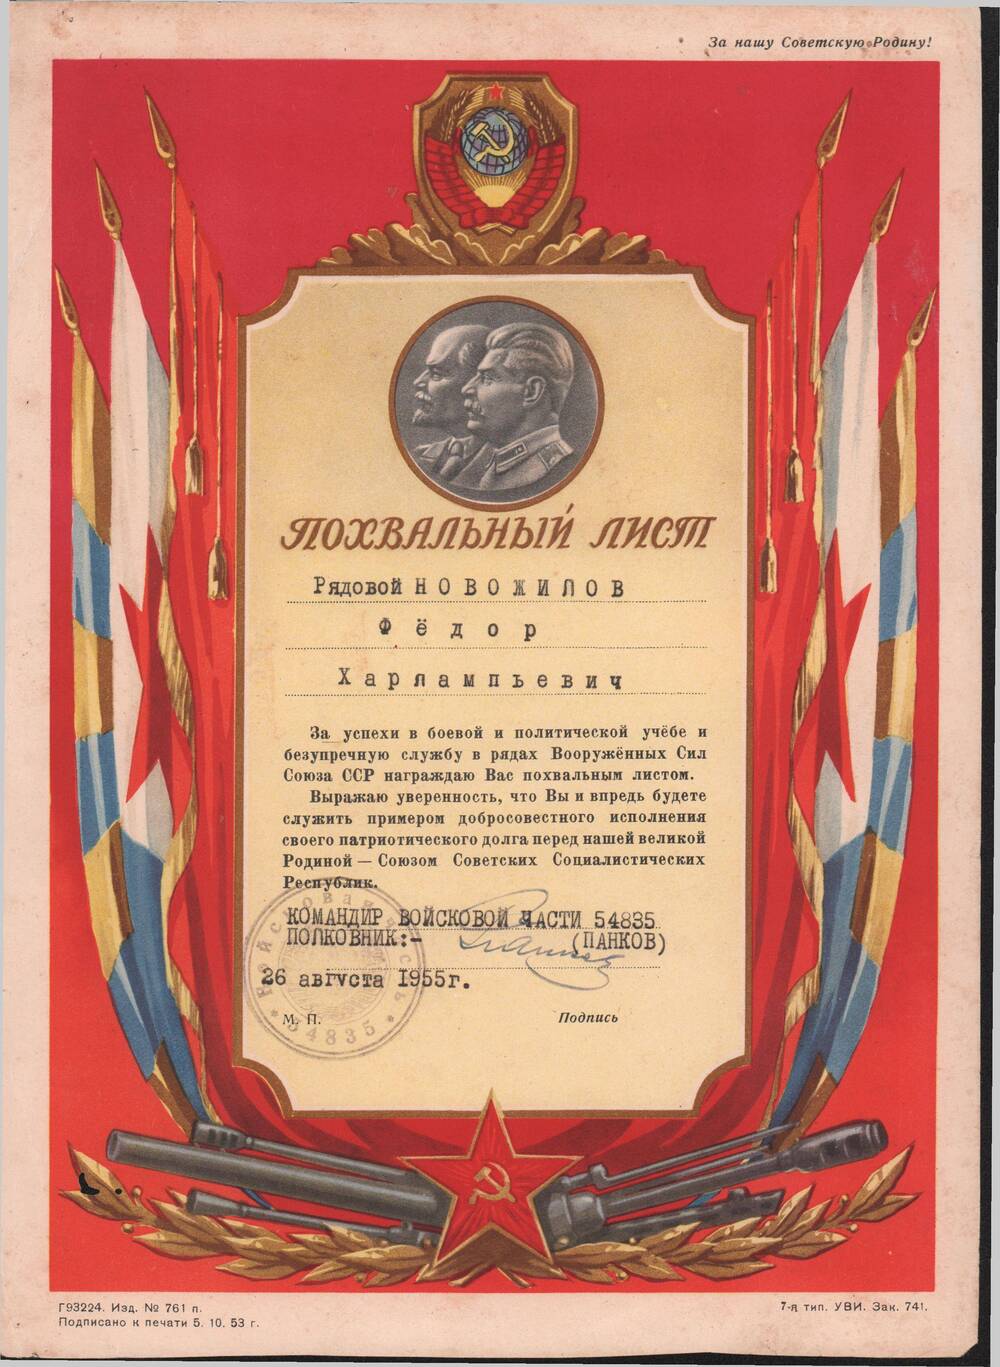 Похвальный лист за успехи в боевой и  политической учебе от командира  войсковой части. 1955 год.